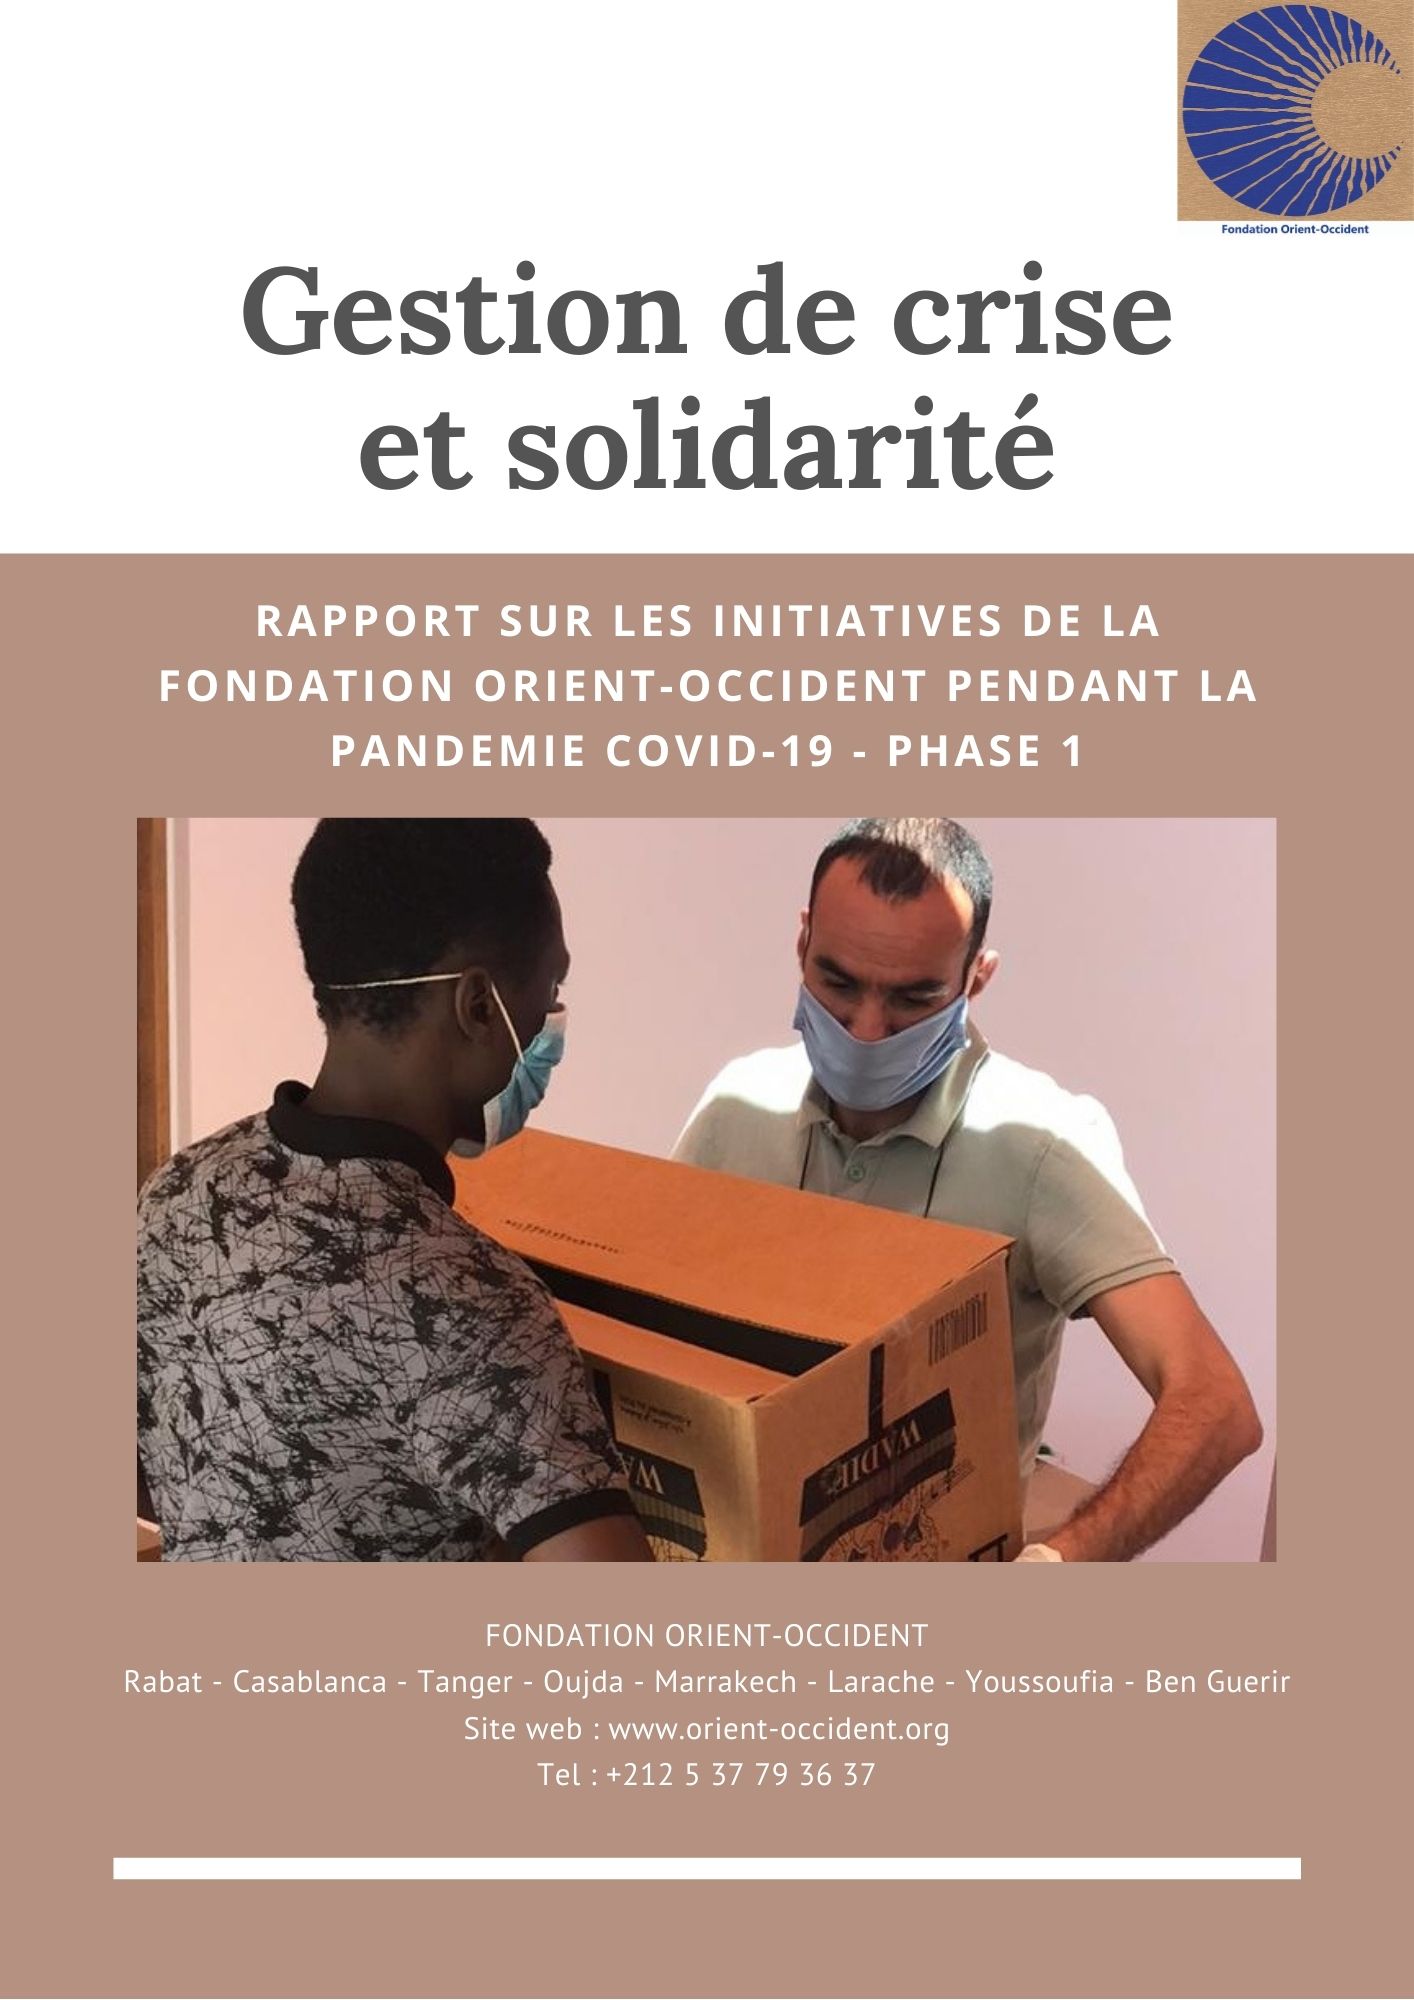 Rapport – Gestion de crise et solidarité – Covid-19 phase 1